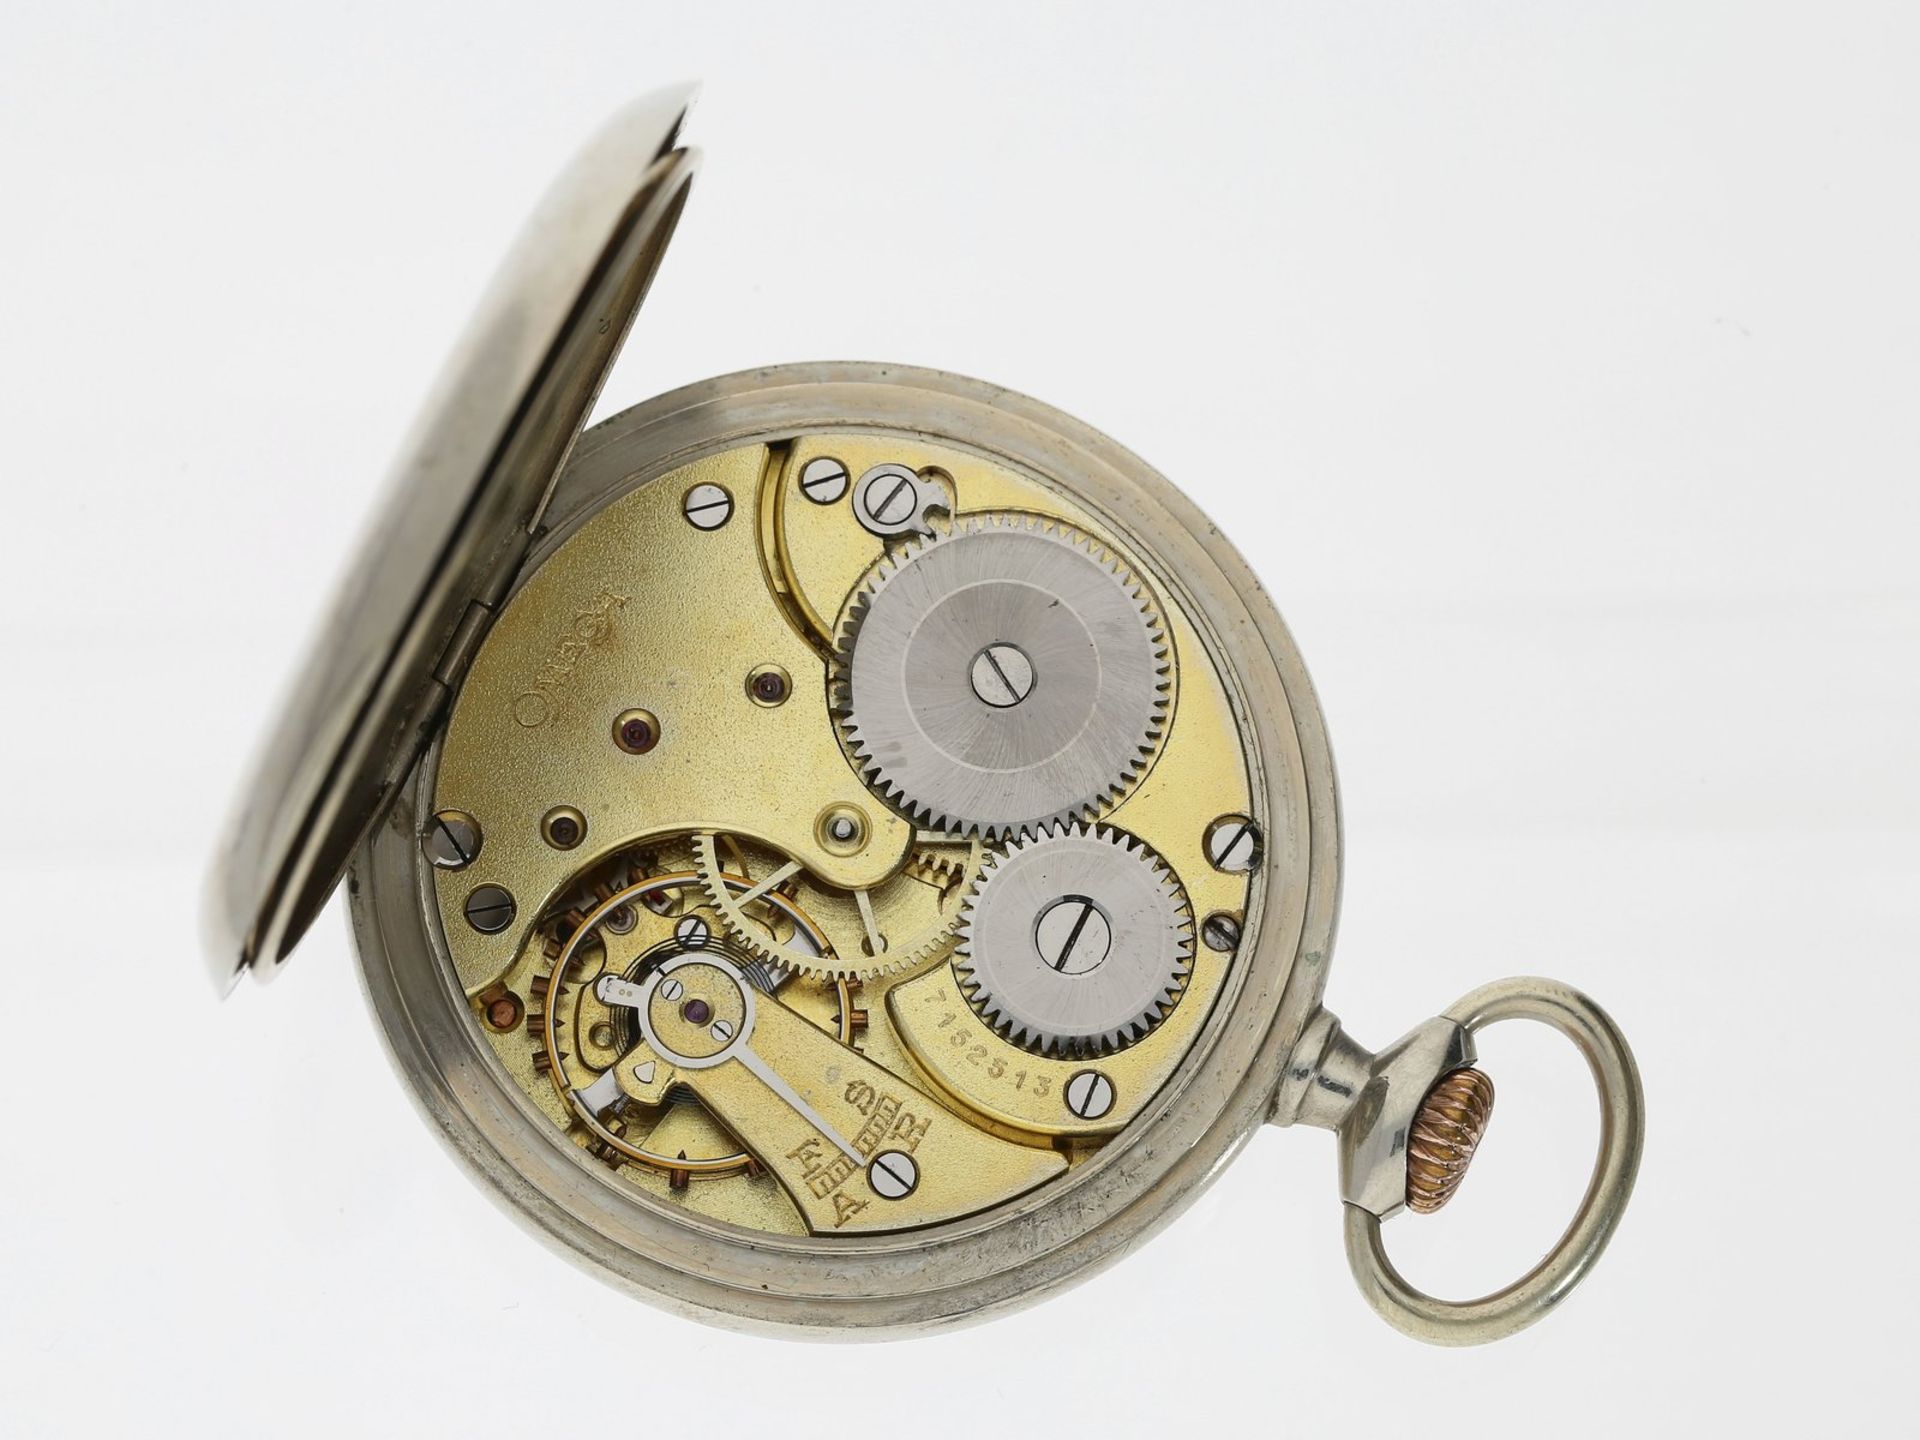 Taschenuhr: sehr seltene Omega Taschenuhr mit 24-h-Zifferblatt und Tag/Nachtanzeige, ca. 1930Ca. - Image 2 of 2